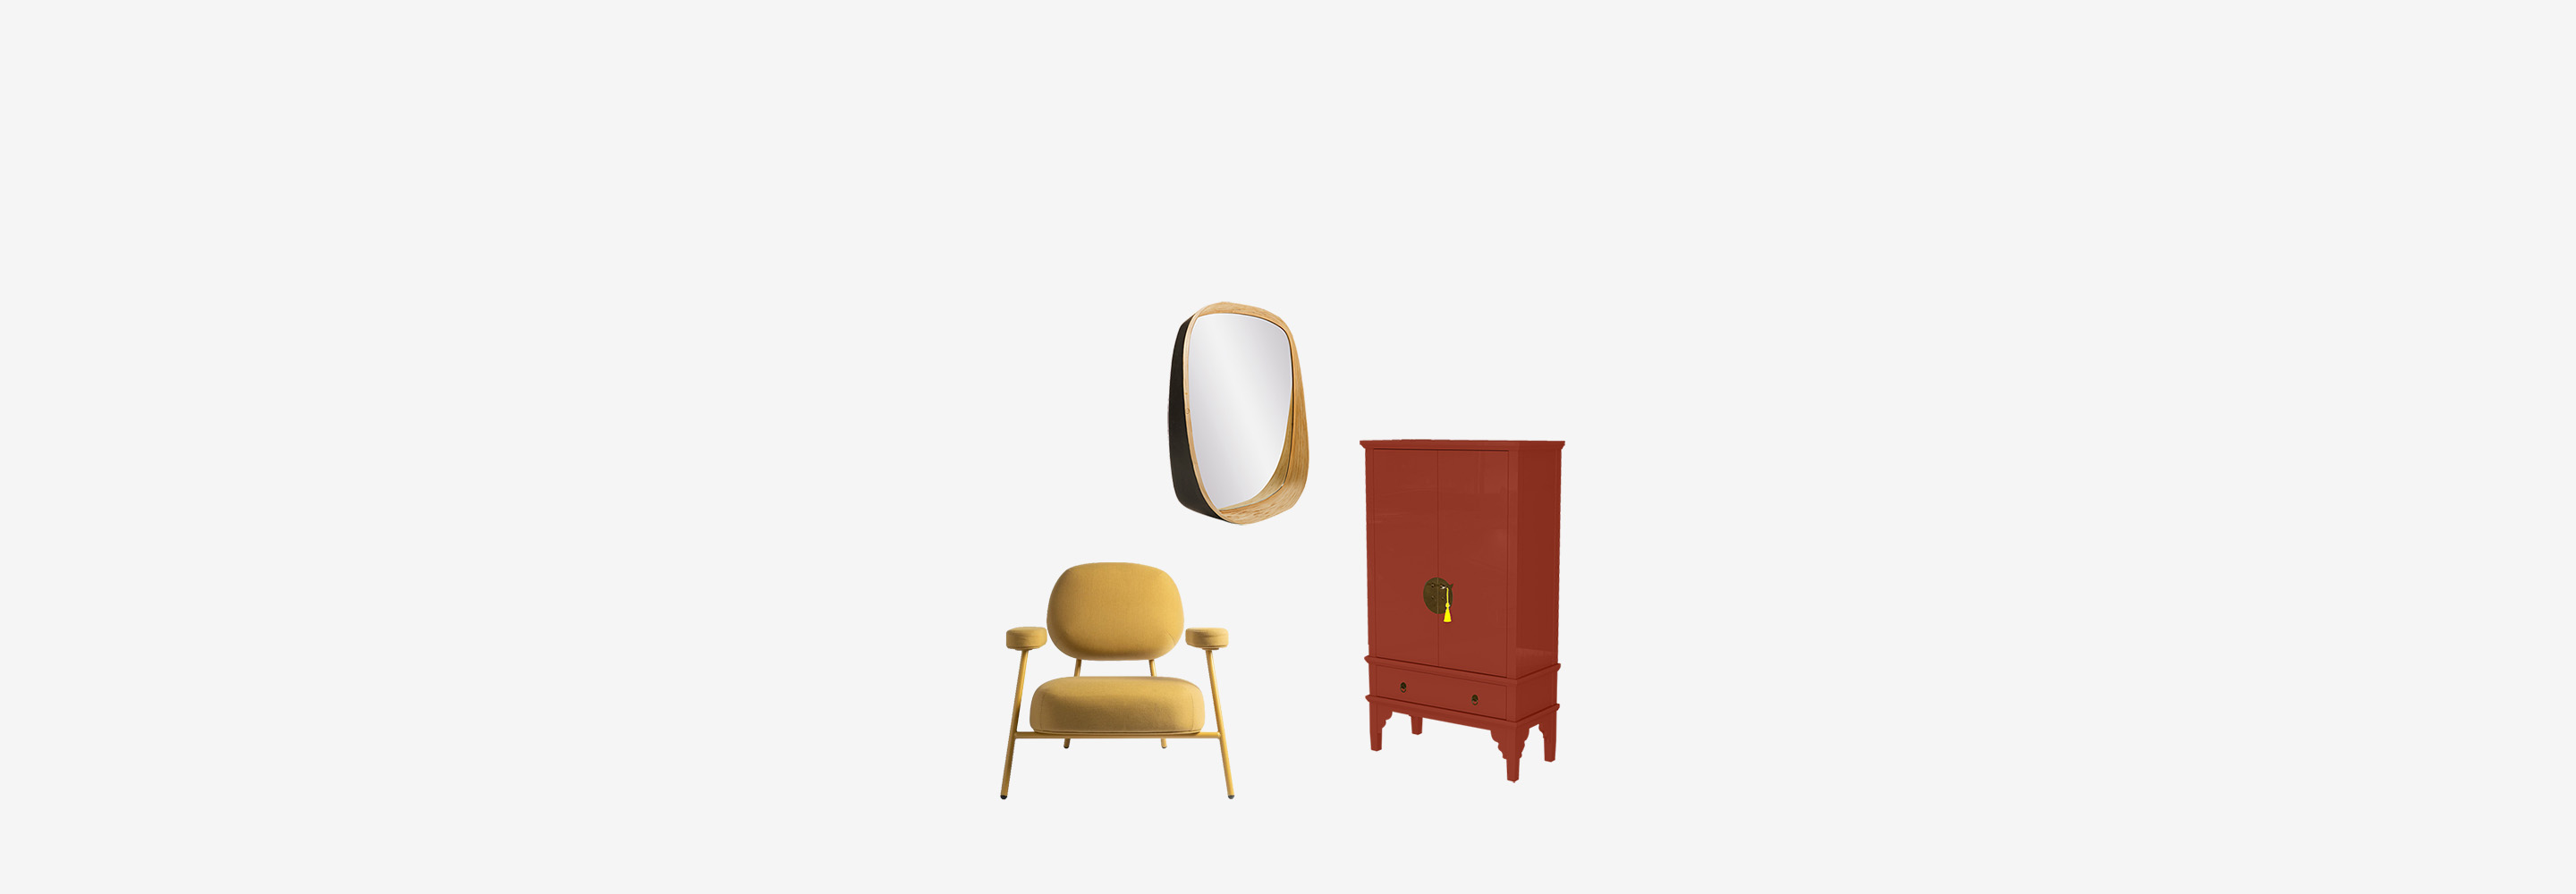 Купить мебель в городе Днепр в удобном для вас формате просто!